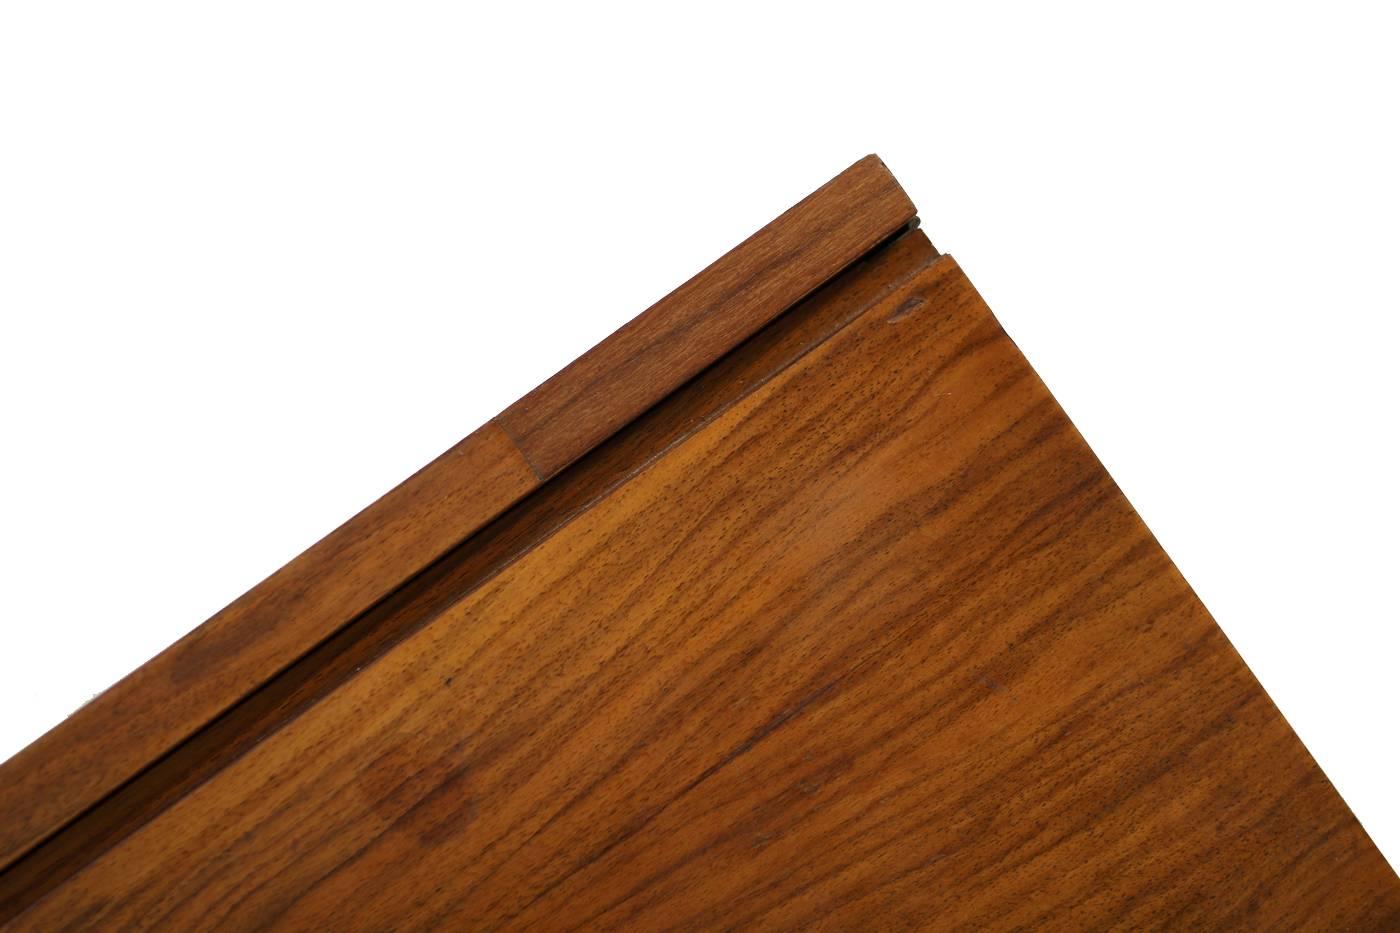 1960s Minimalist Sideboard Teak & Maple on Metal Base Mid-Century Modern Design 1